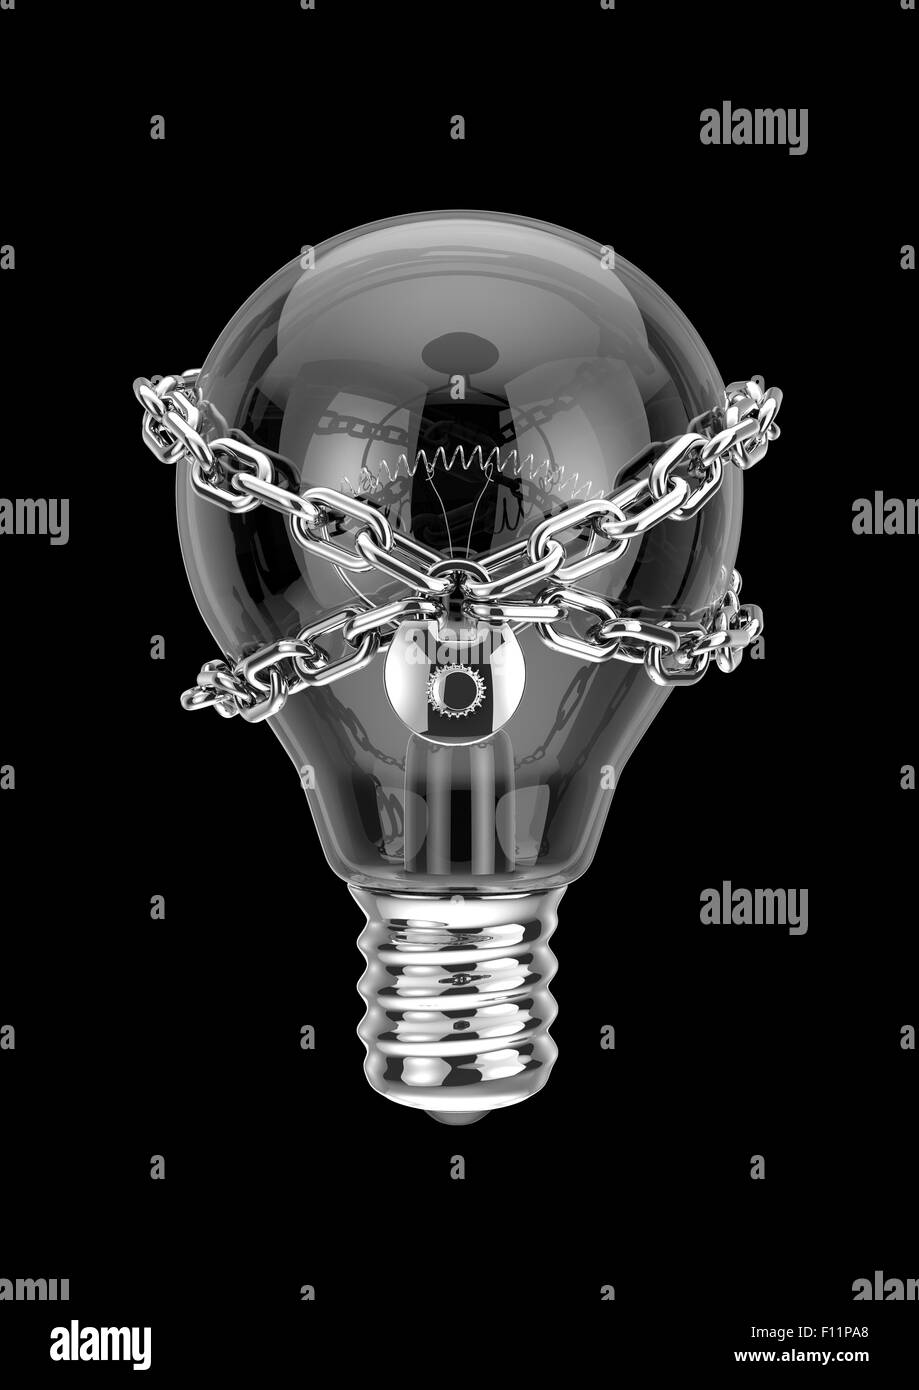 Proprietà intellettuale, 3D Rendering della lampadina con serratura e catena Foto Stock